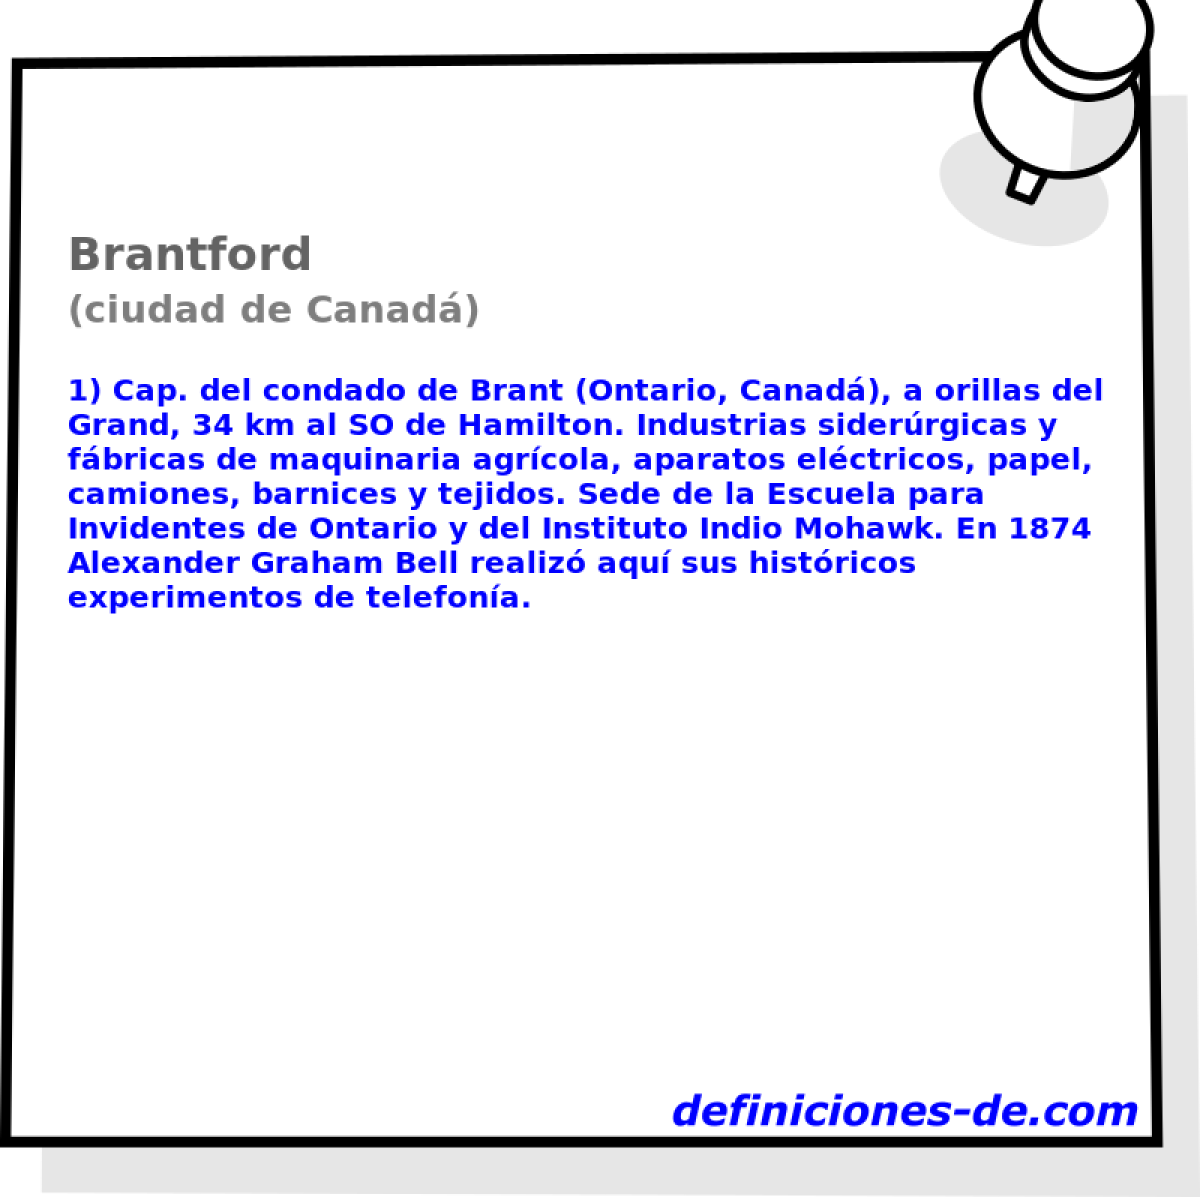 Brantford (ciudad de Canad)